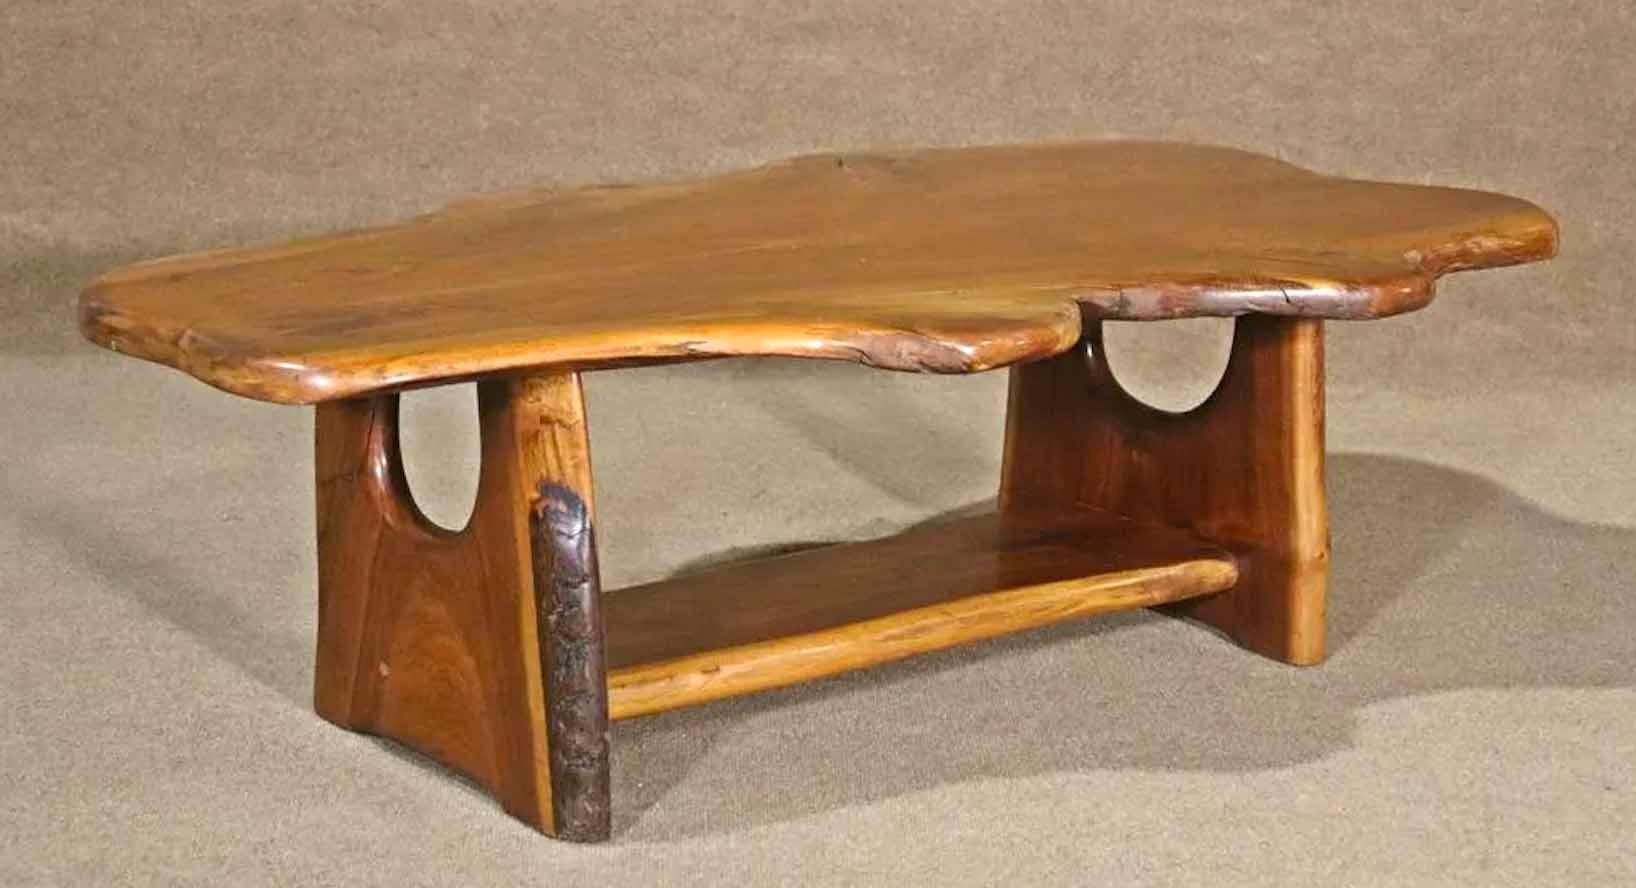 Tavolino da caffè moderno di metà secolo con un'unica lastra montata su una base interamente in legno. Grande forma organica dal vivo.
Si prega di confermare la posizione.